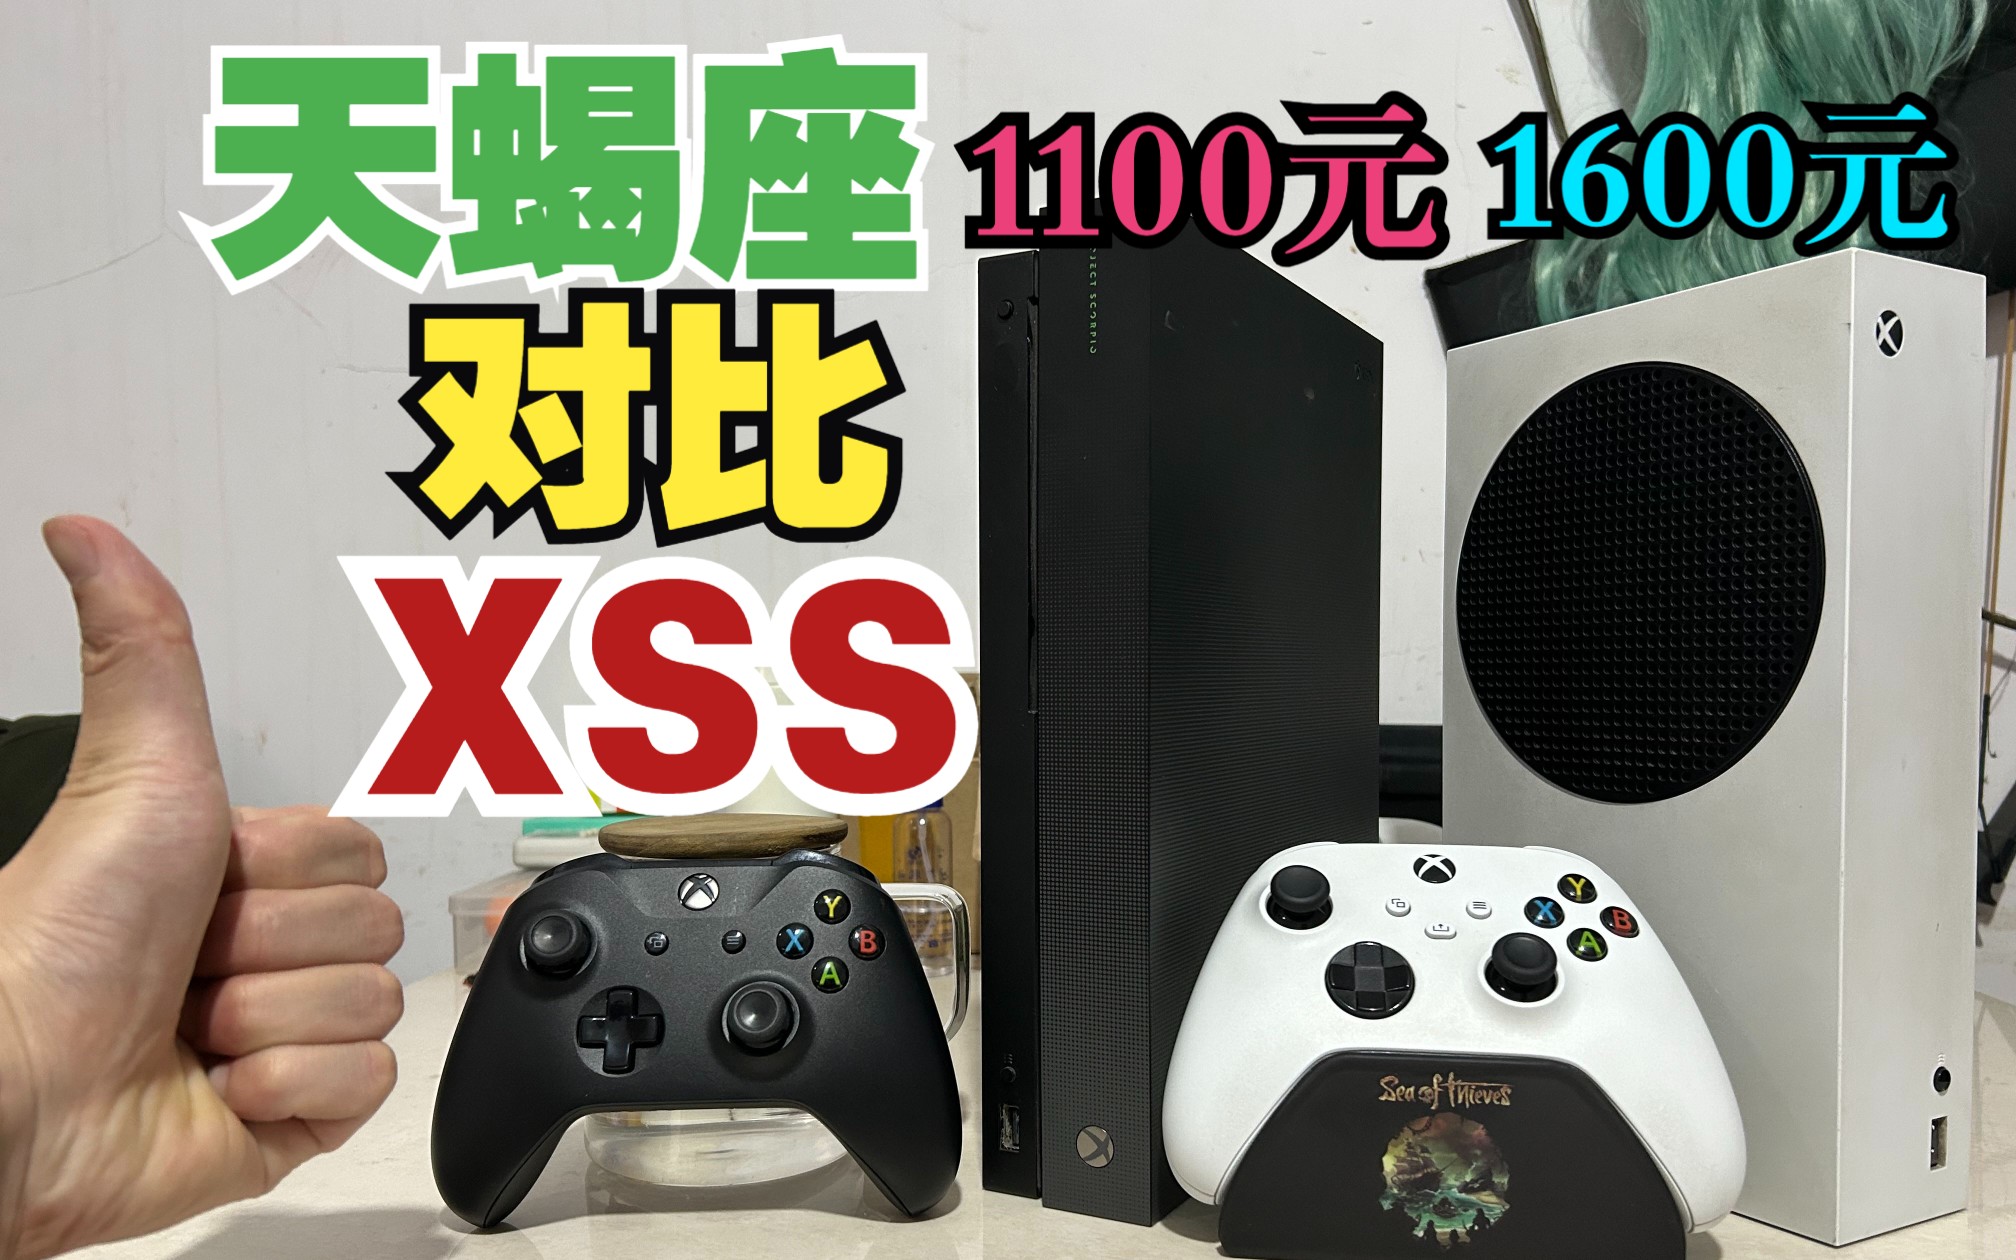 一千多块钱是买Xbox天蝎座还是XSS？看完这个视频你就懂了